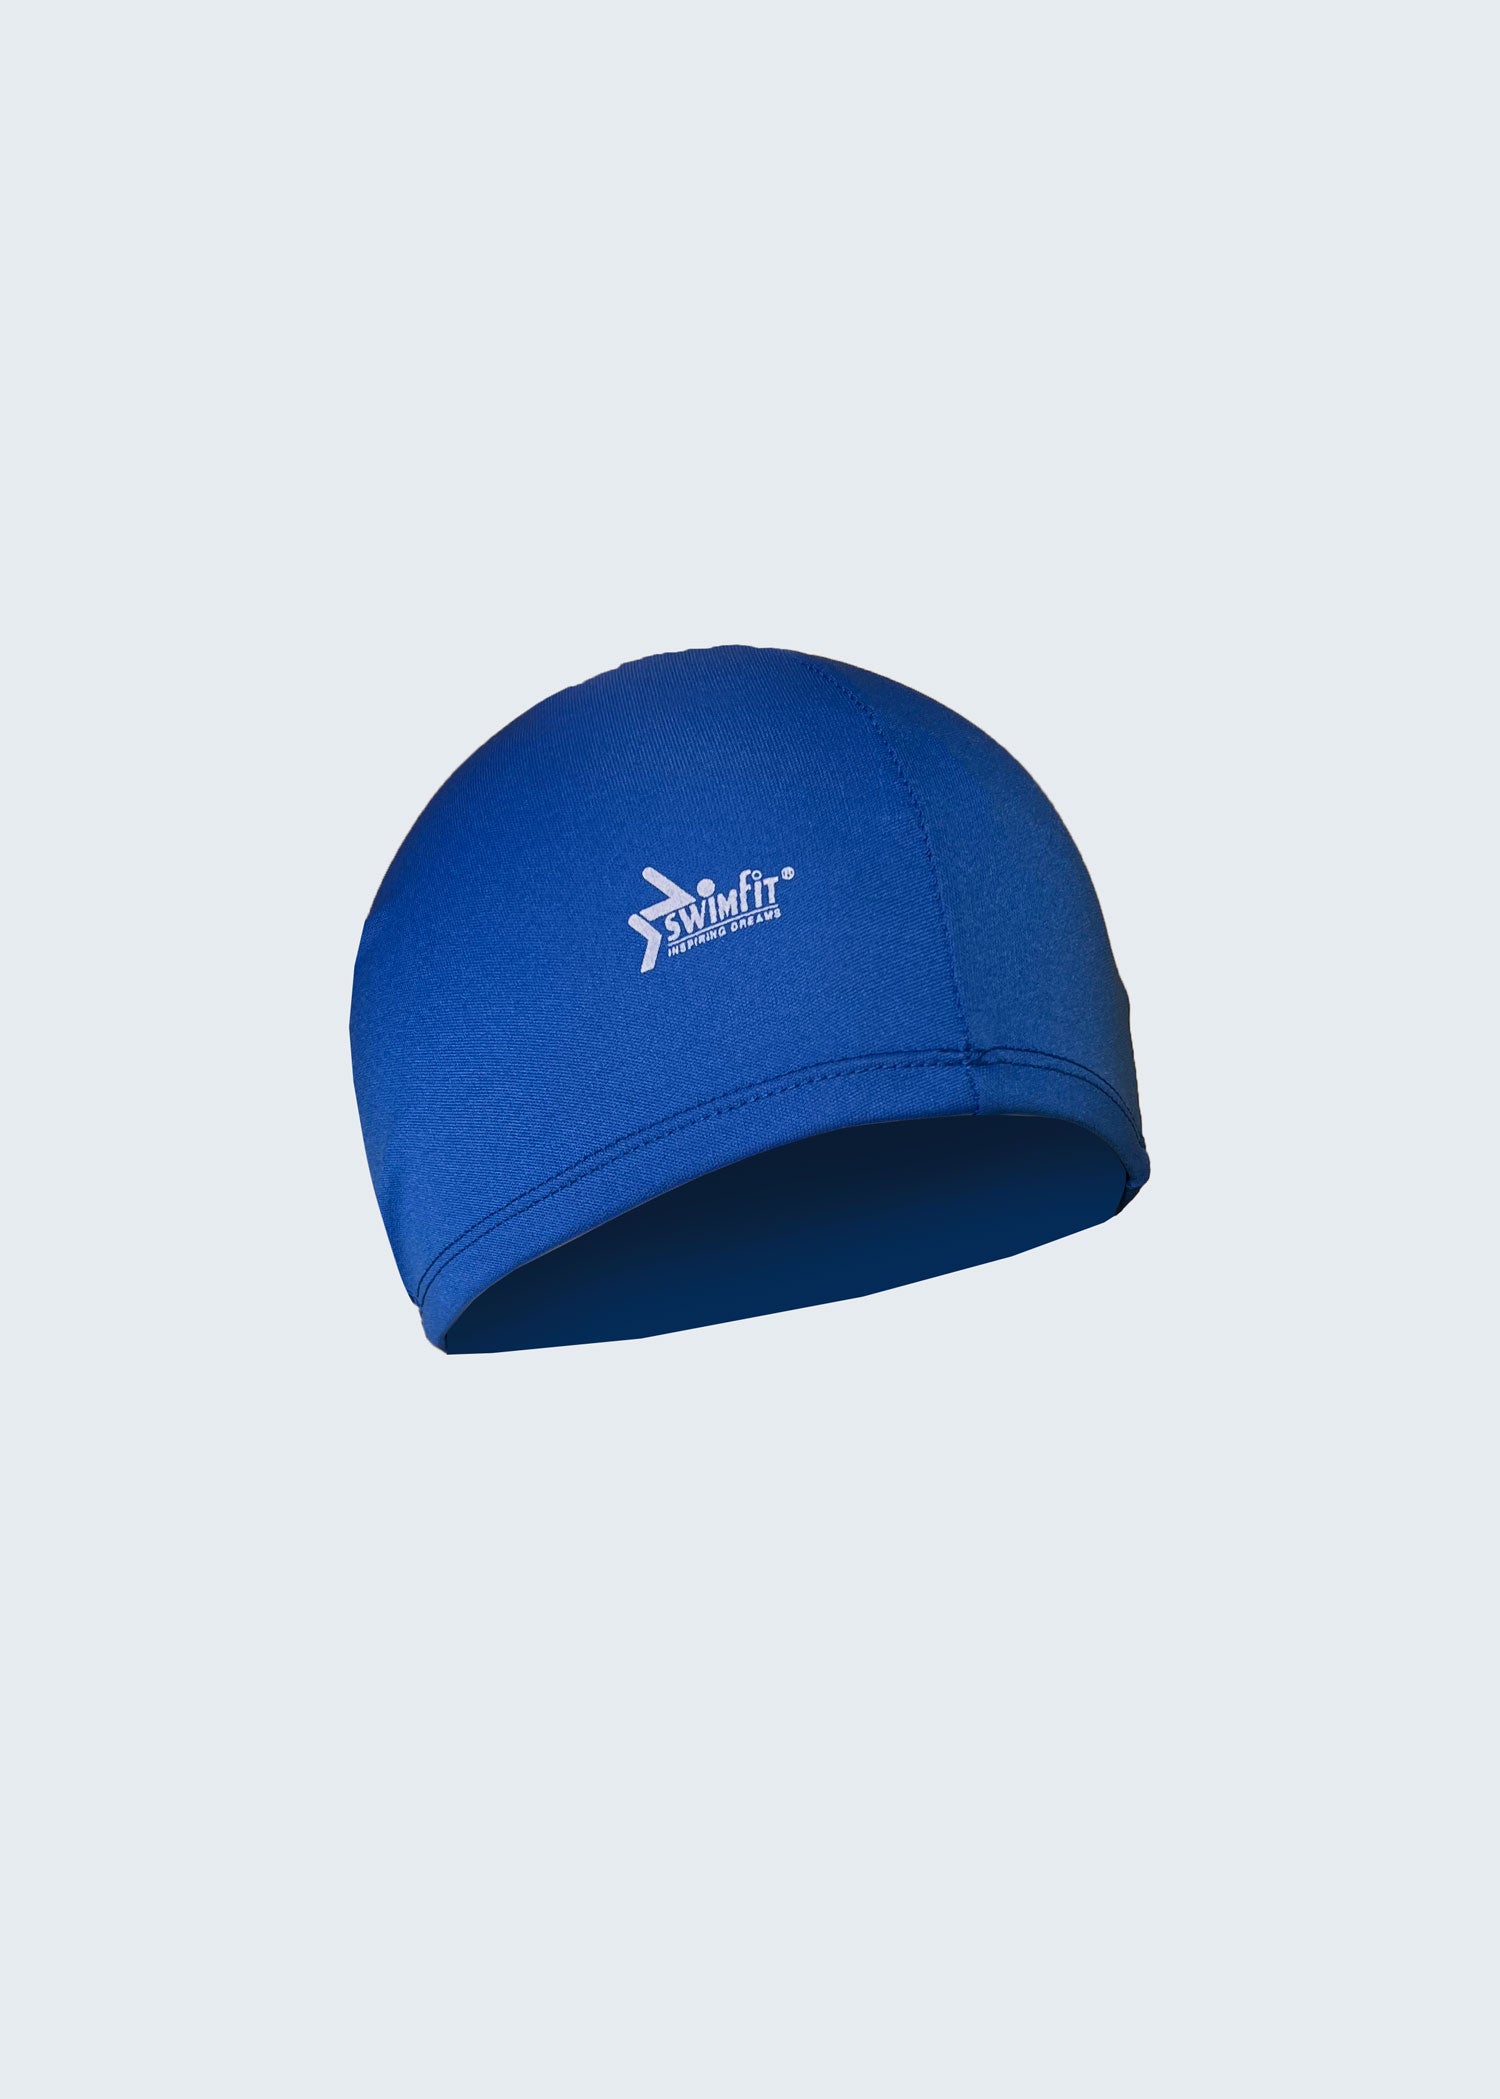 כובע ים לייקרה Swimfit כחול - לויטקס Levitex